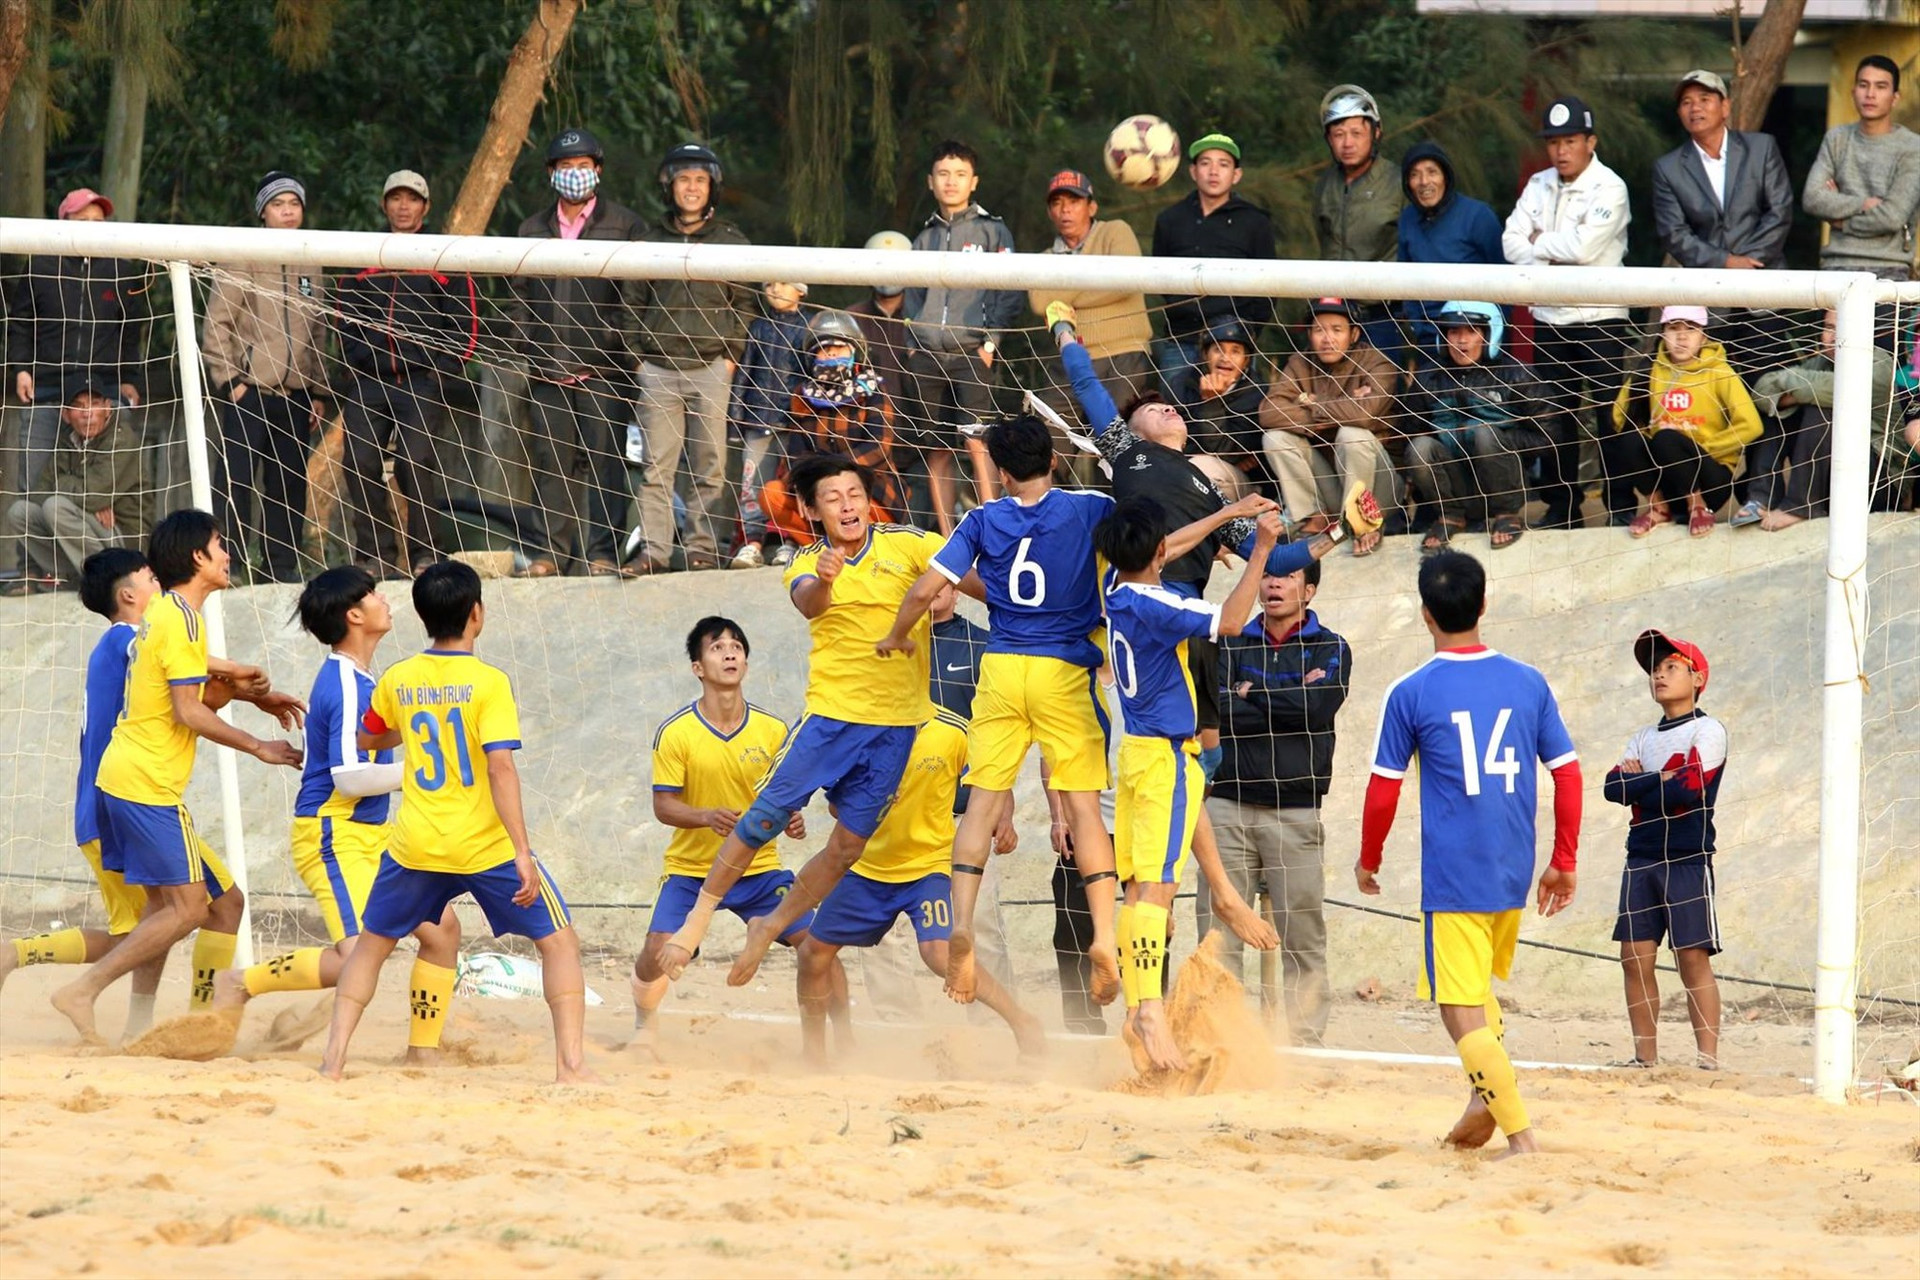 Các giải thể thao phong trào trở thành ngày hội ở Núi Thành. TRONG ẢNH: Một trận bóng đá cấp xã ở Núi Thành. Ảnh: N.T